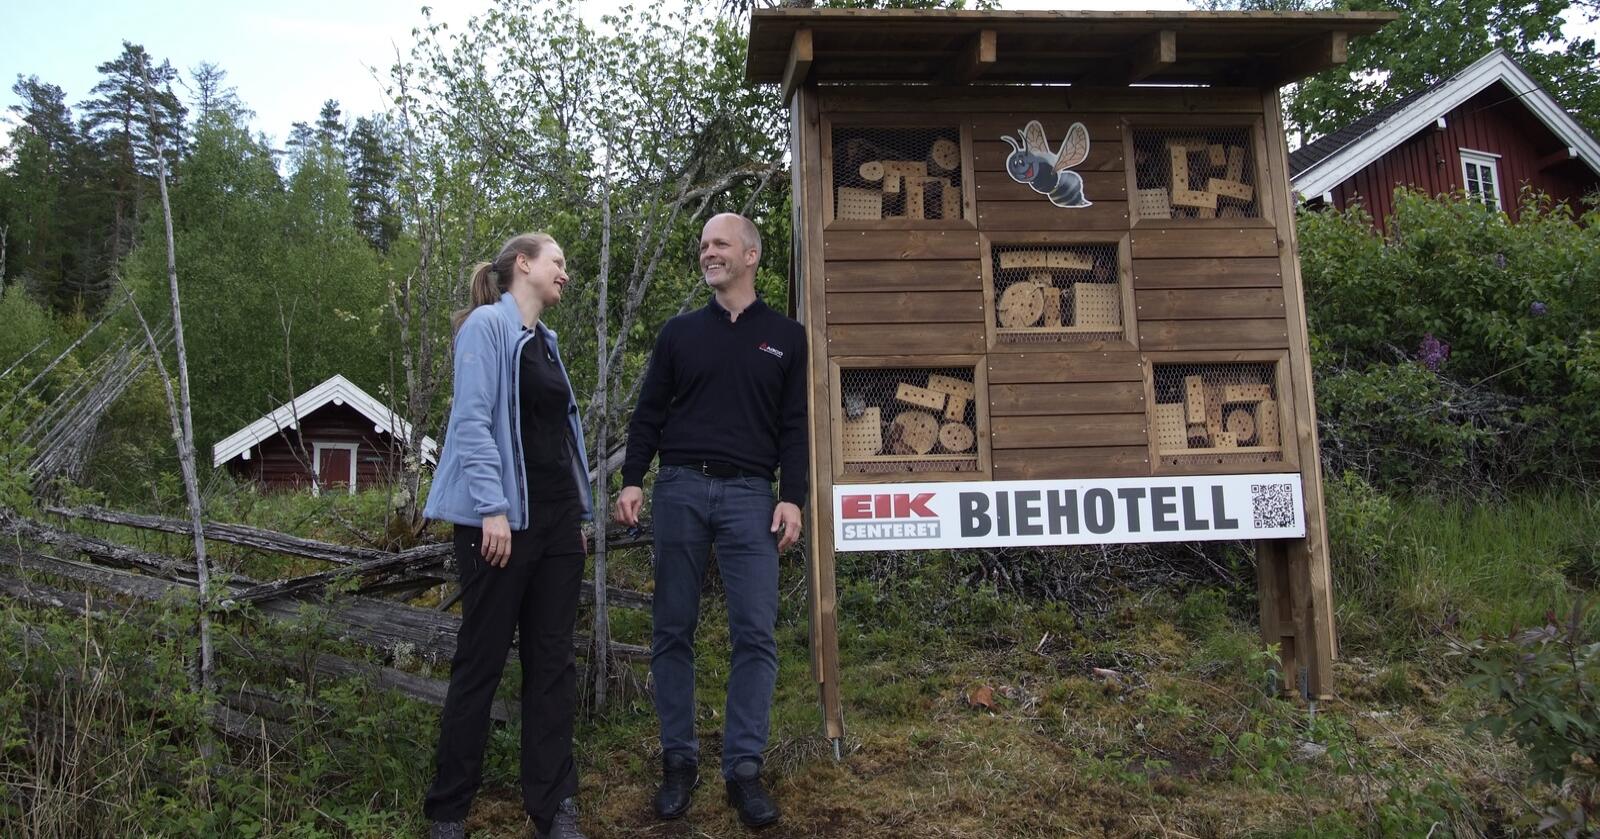 BIEHOTELL: Astrid Brekke Skrindo (NINA) og Henrik Fagerland (Eikmaskin) ved et av biehotellene som skal bidra til et lettere liv for biene og til økt pollinering. Foto: Beate Hurum Berg